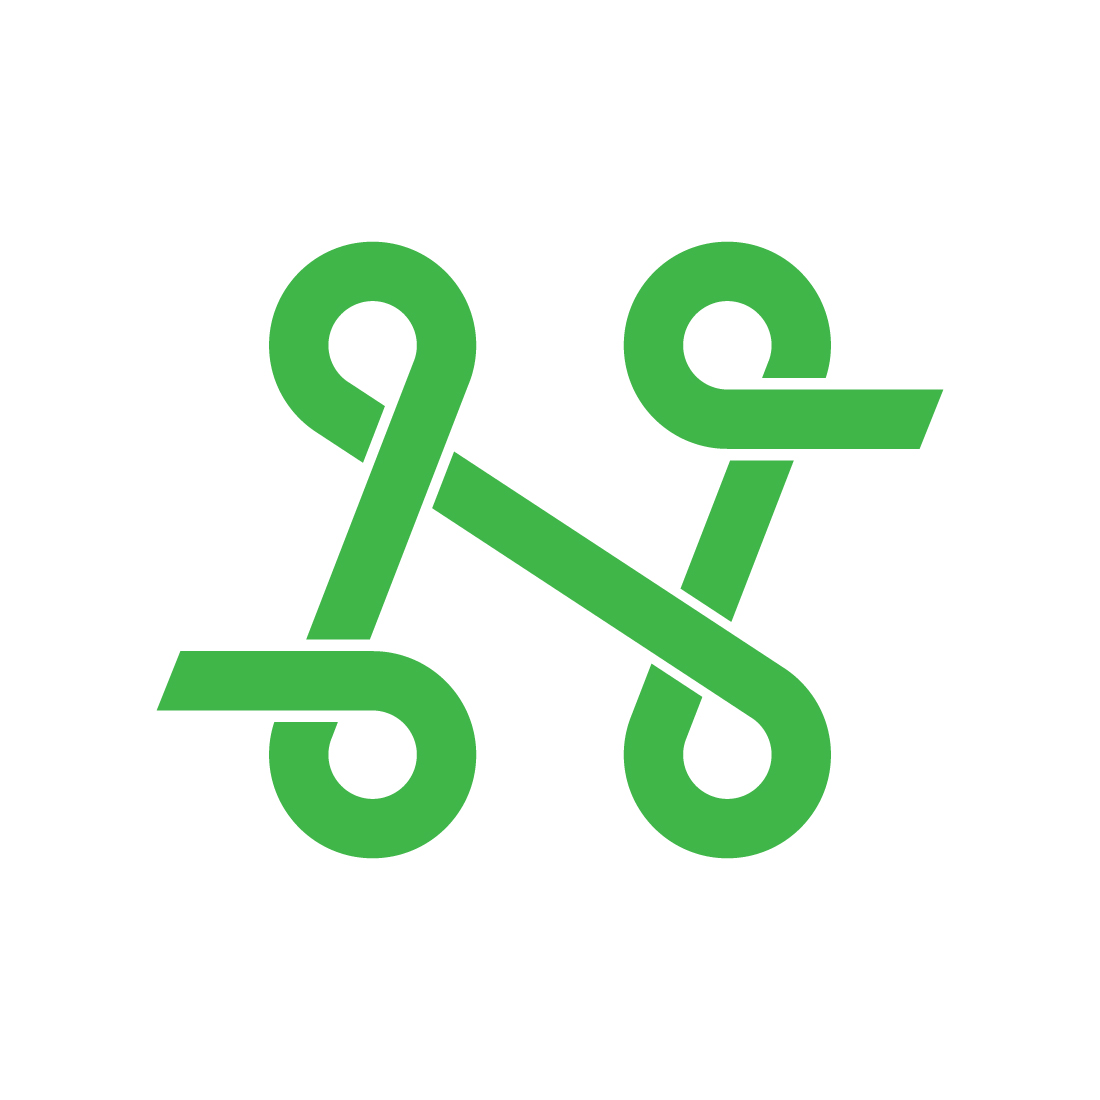 n letter logo 1 159